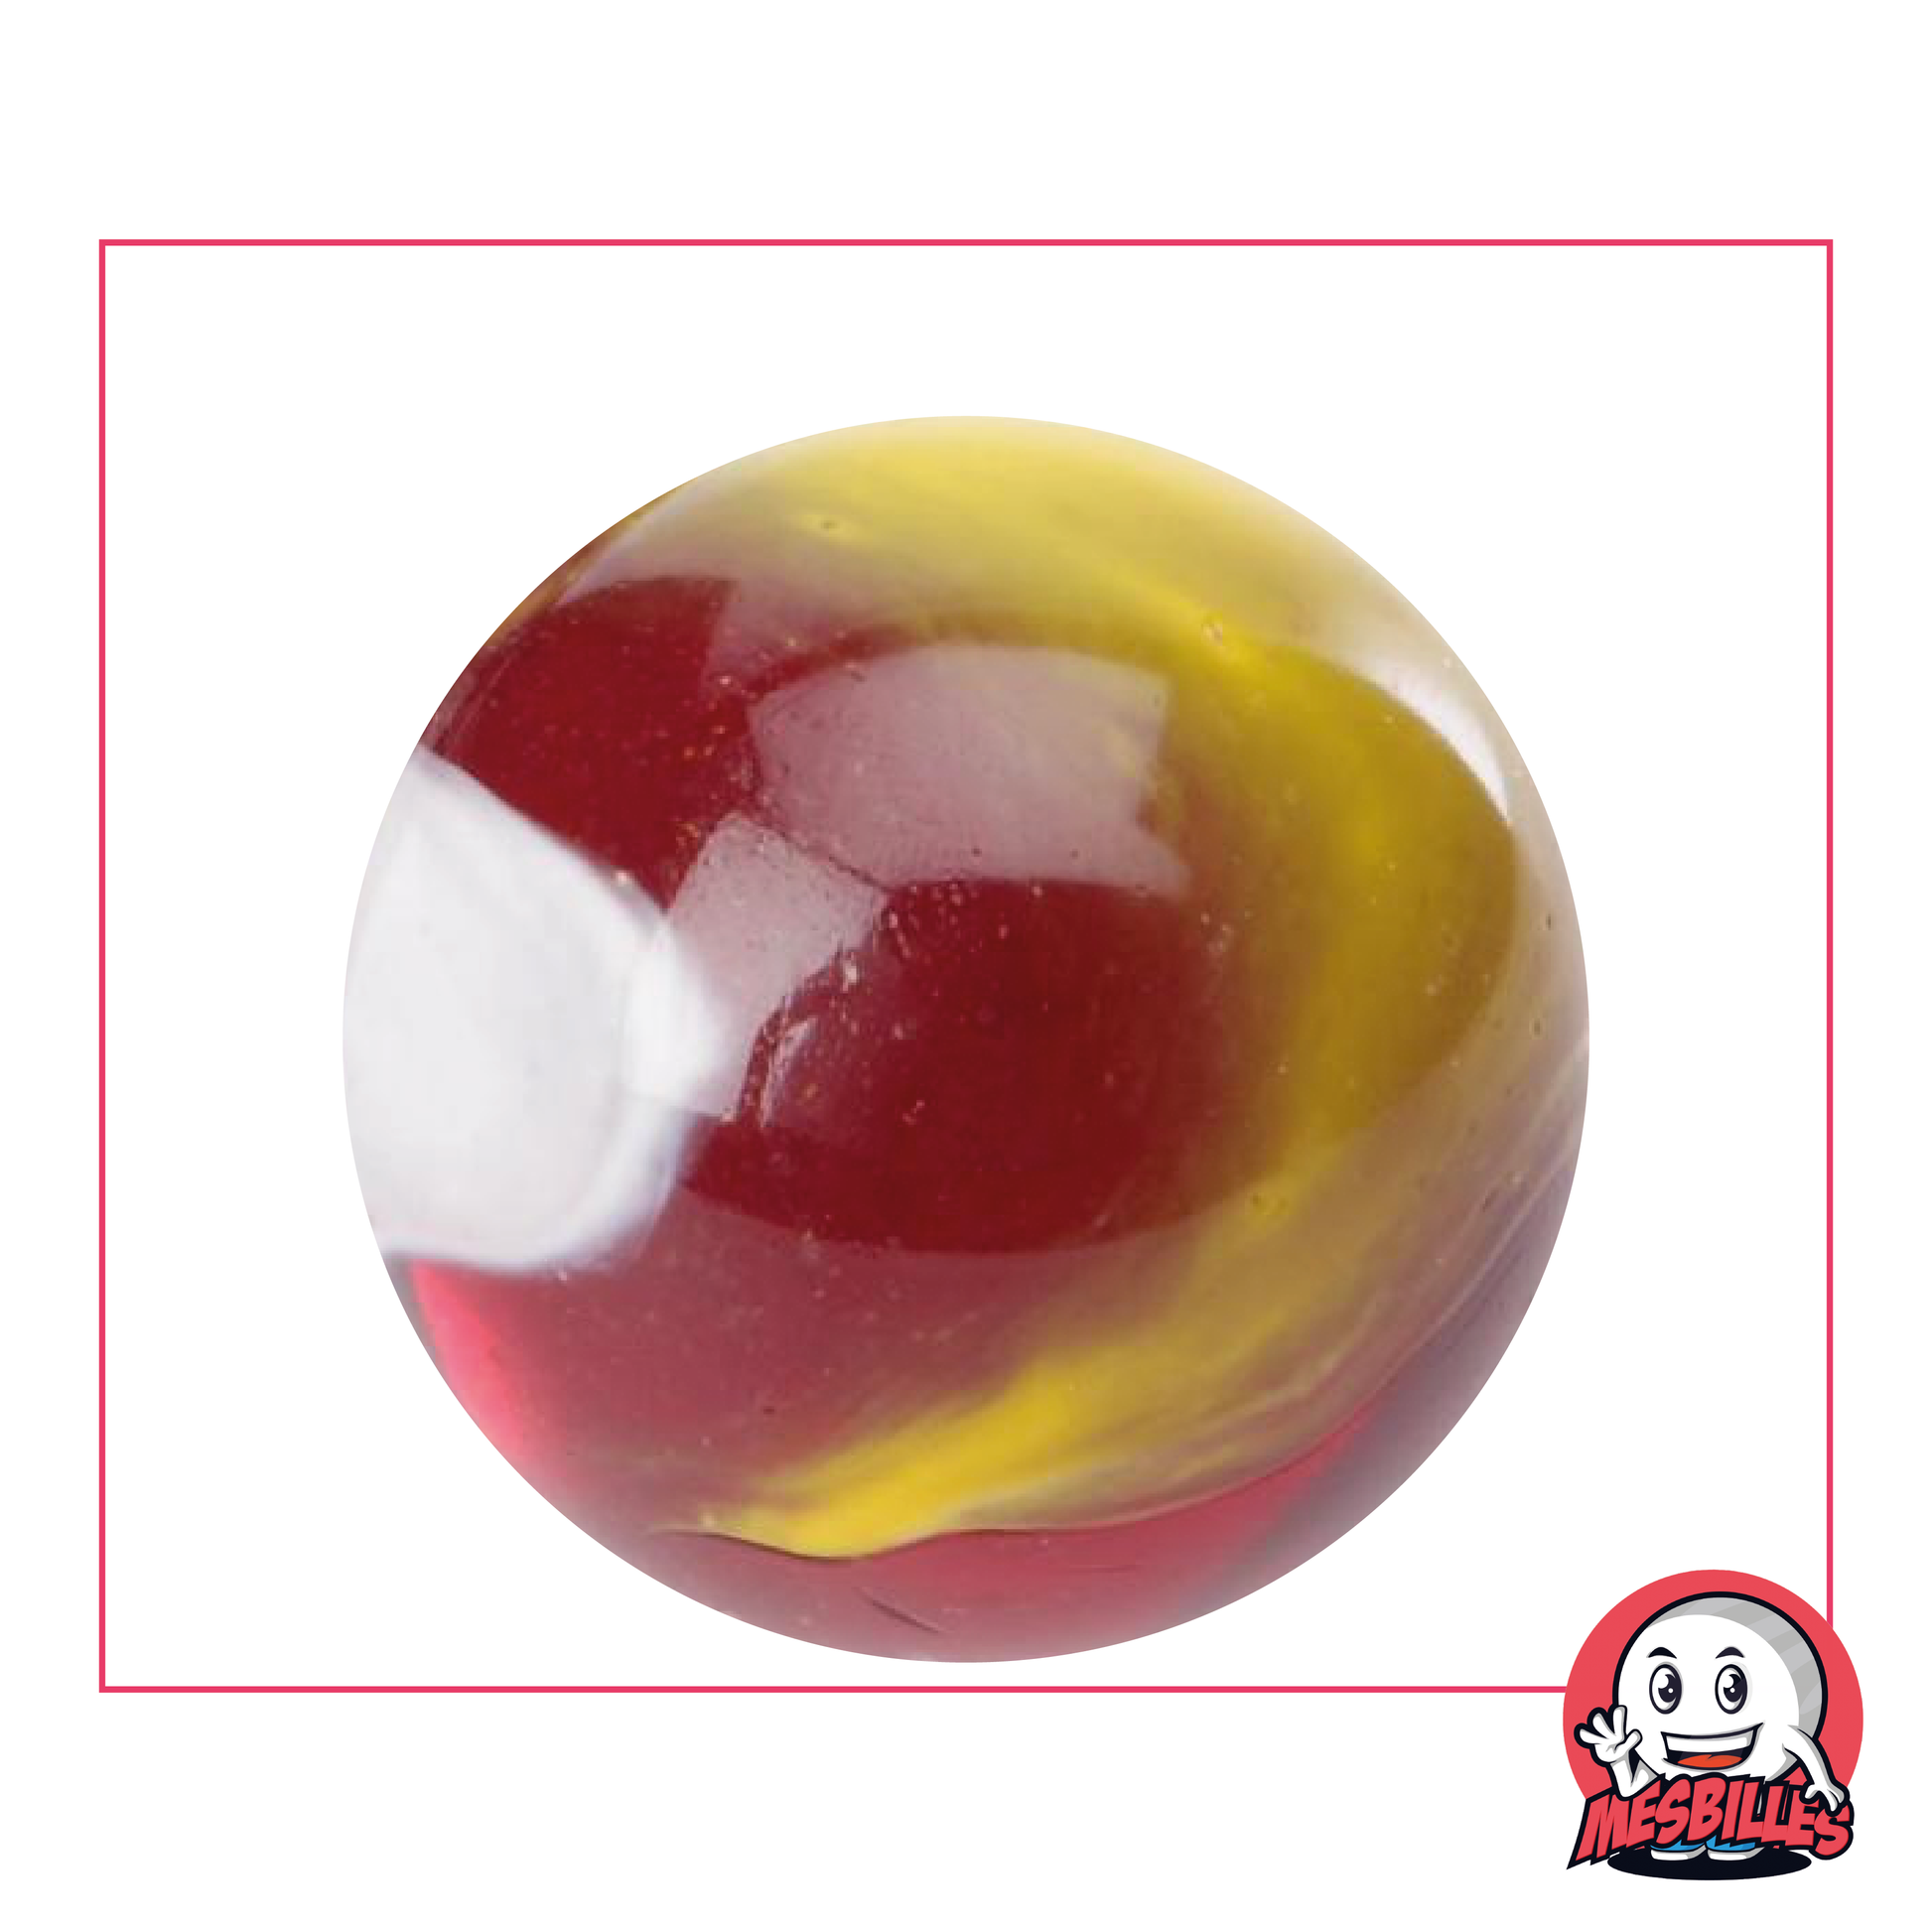 Bille Clown de 42 mm en verre rouge sombre translucide et courbes blanches et jaune, Grosse Bille